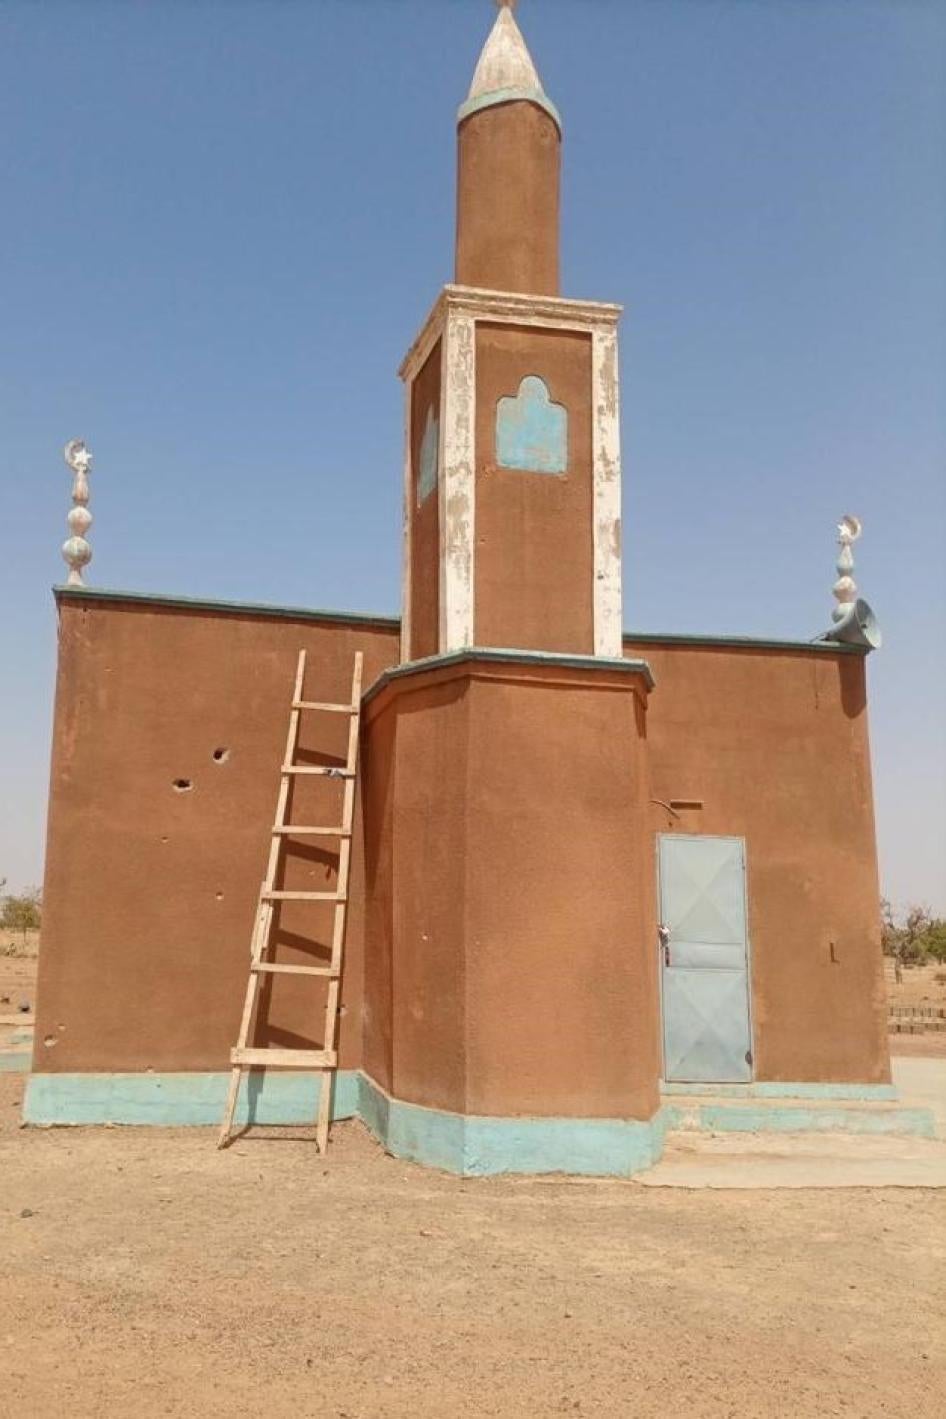 La mosquée de Karma, dans la province du Yatenga au Burkina Faso, avec des traces de balles tirées le 20 avril 2023 par des hommes qui semblaient être des soldats burkinabè. Photo prise le 27 avril 2023. 